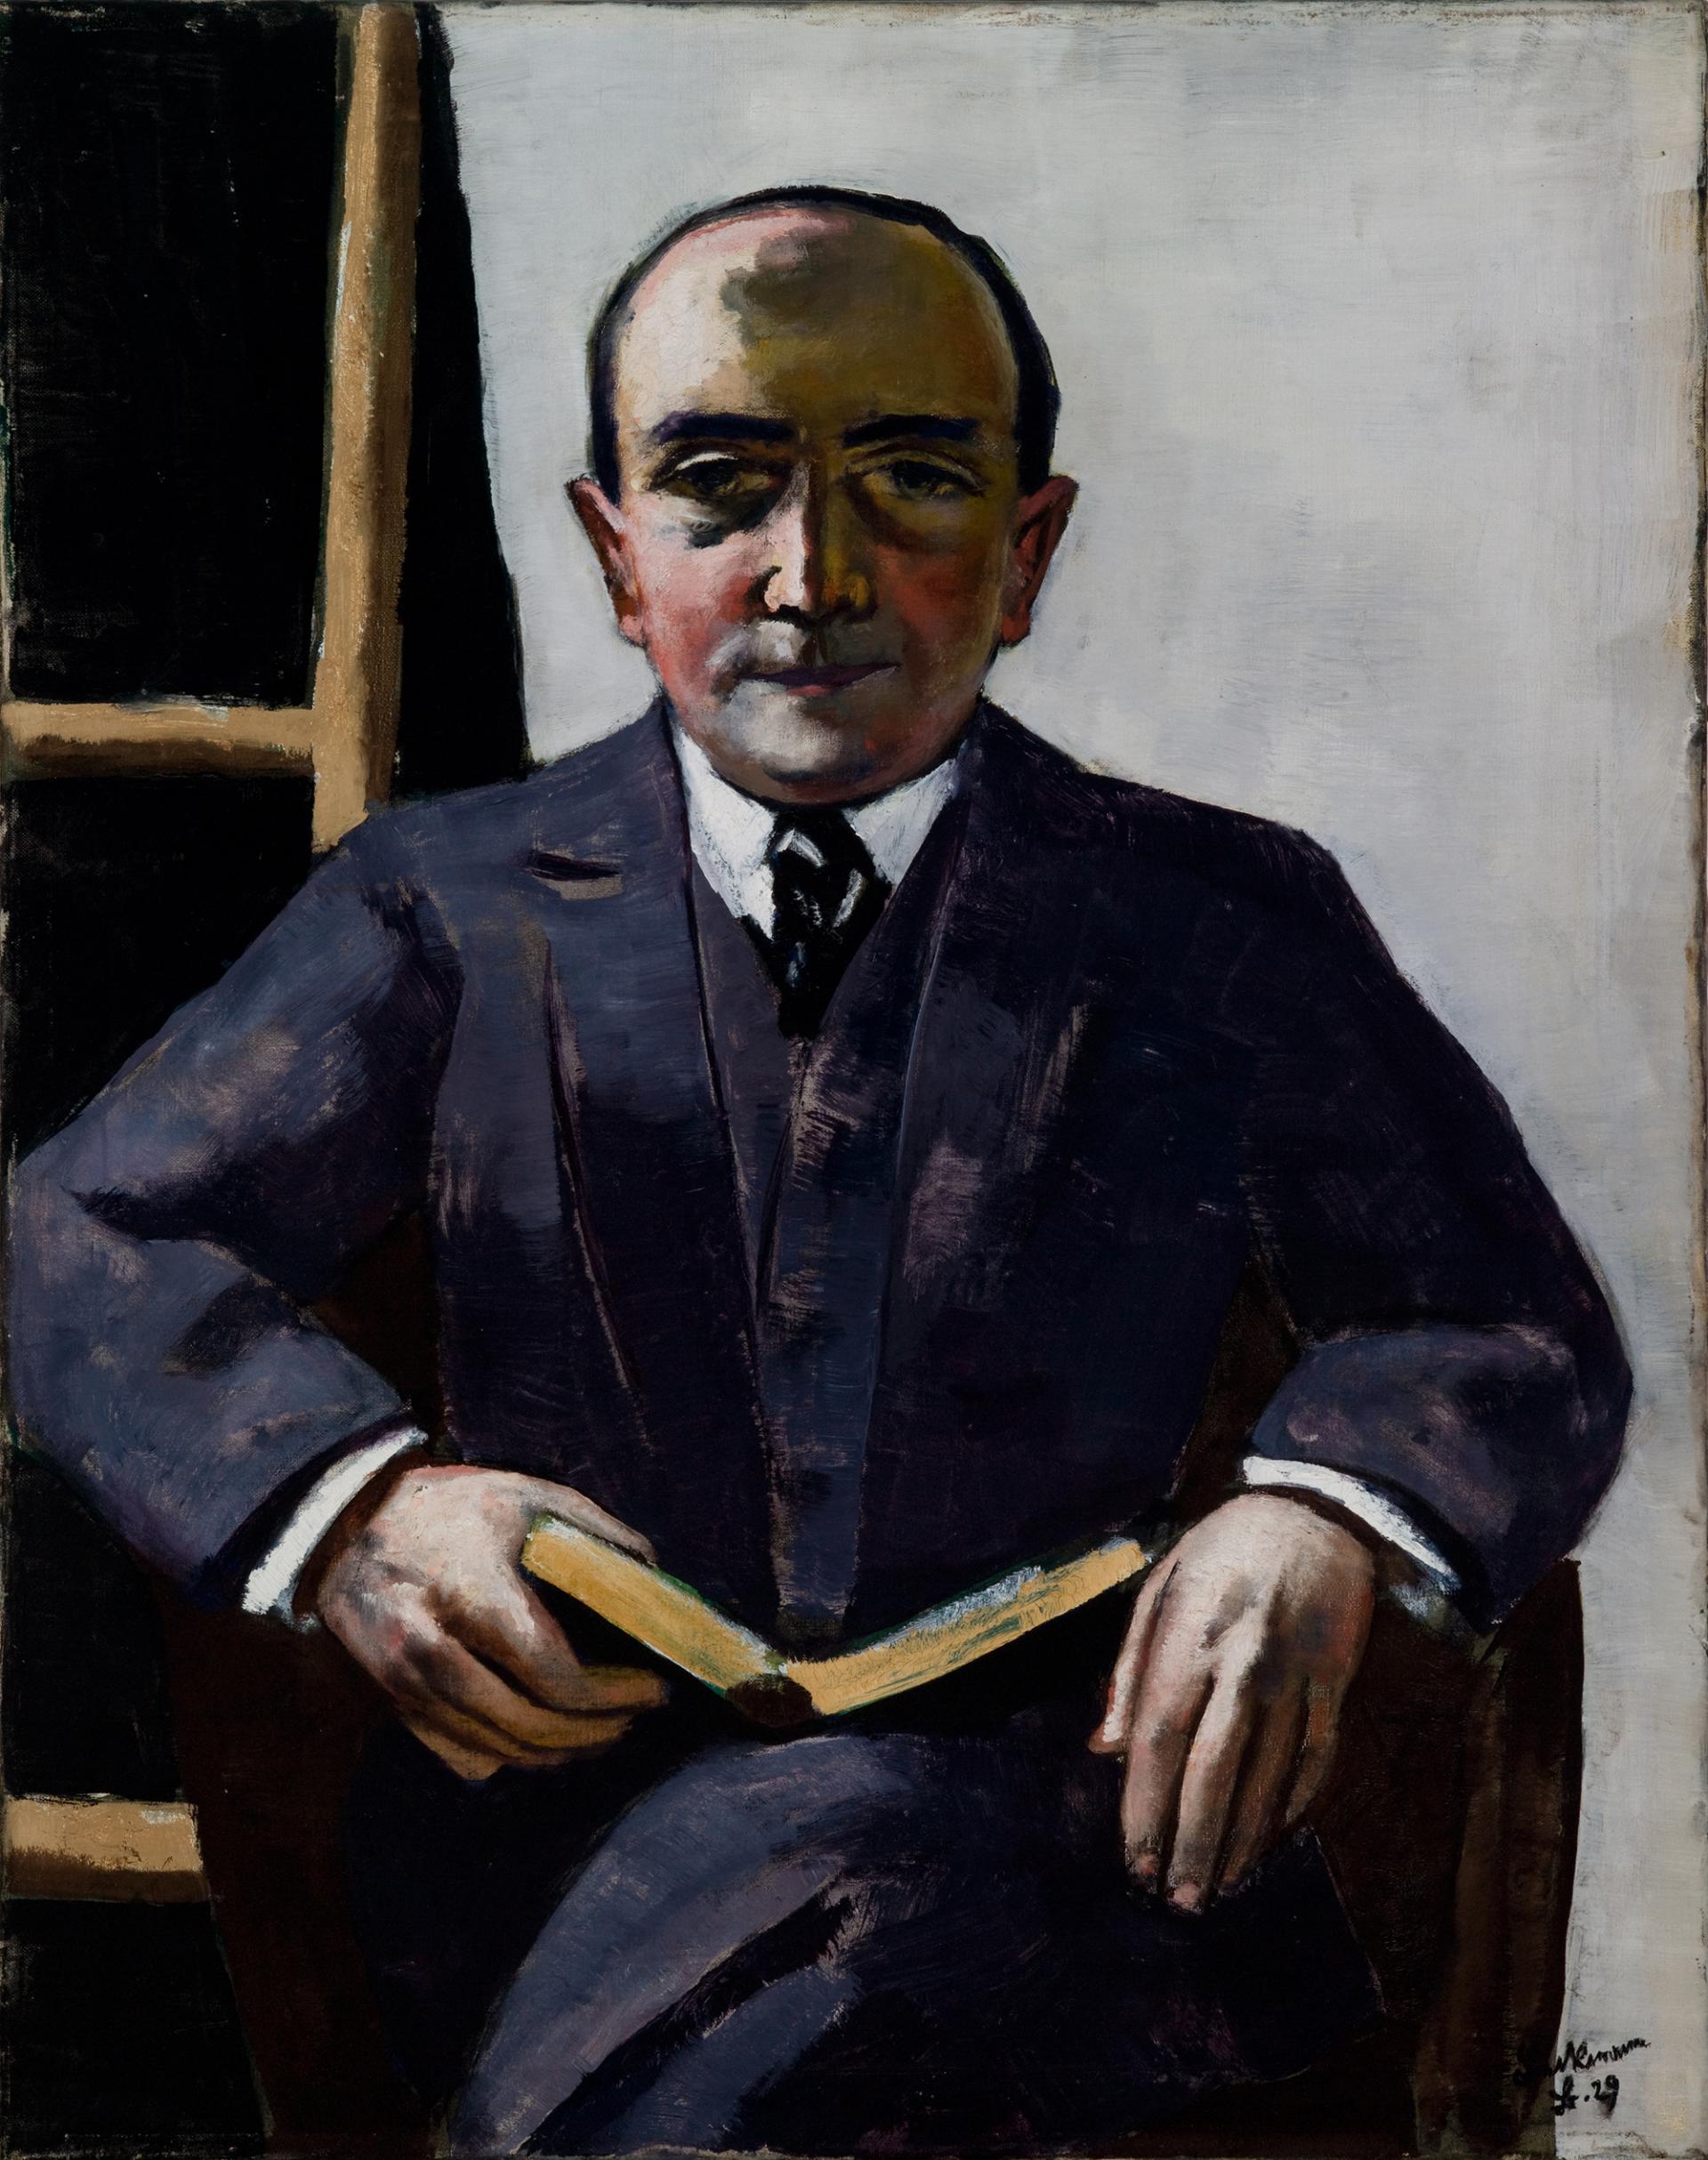 Max Beckmann, Portrait de Curt Glaser, 1929, Huile sur toile, 94 x 74,3 cm, Saint Louis Art Museum, Bequest of Morton D. May, 845:1983